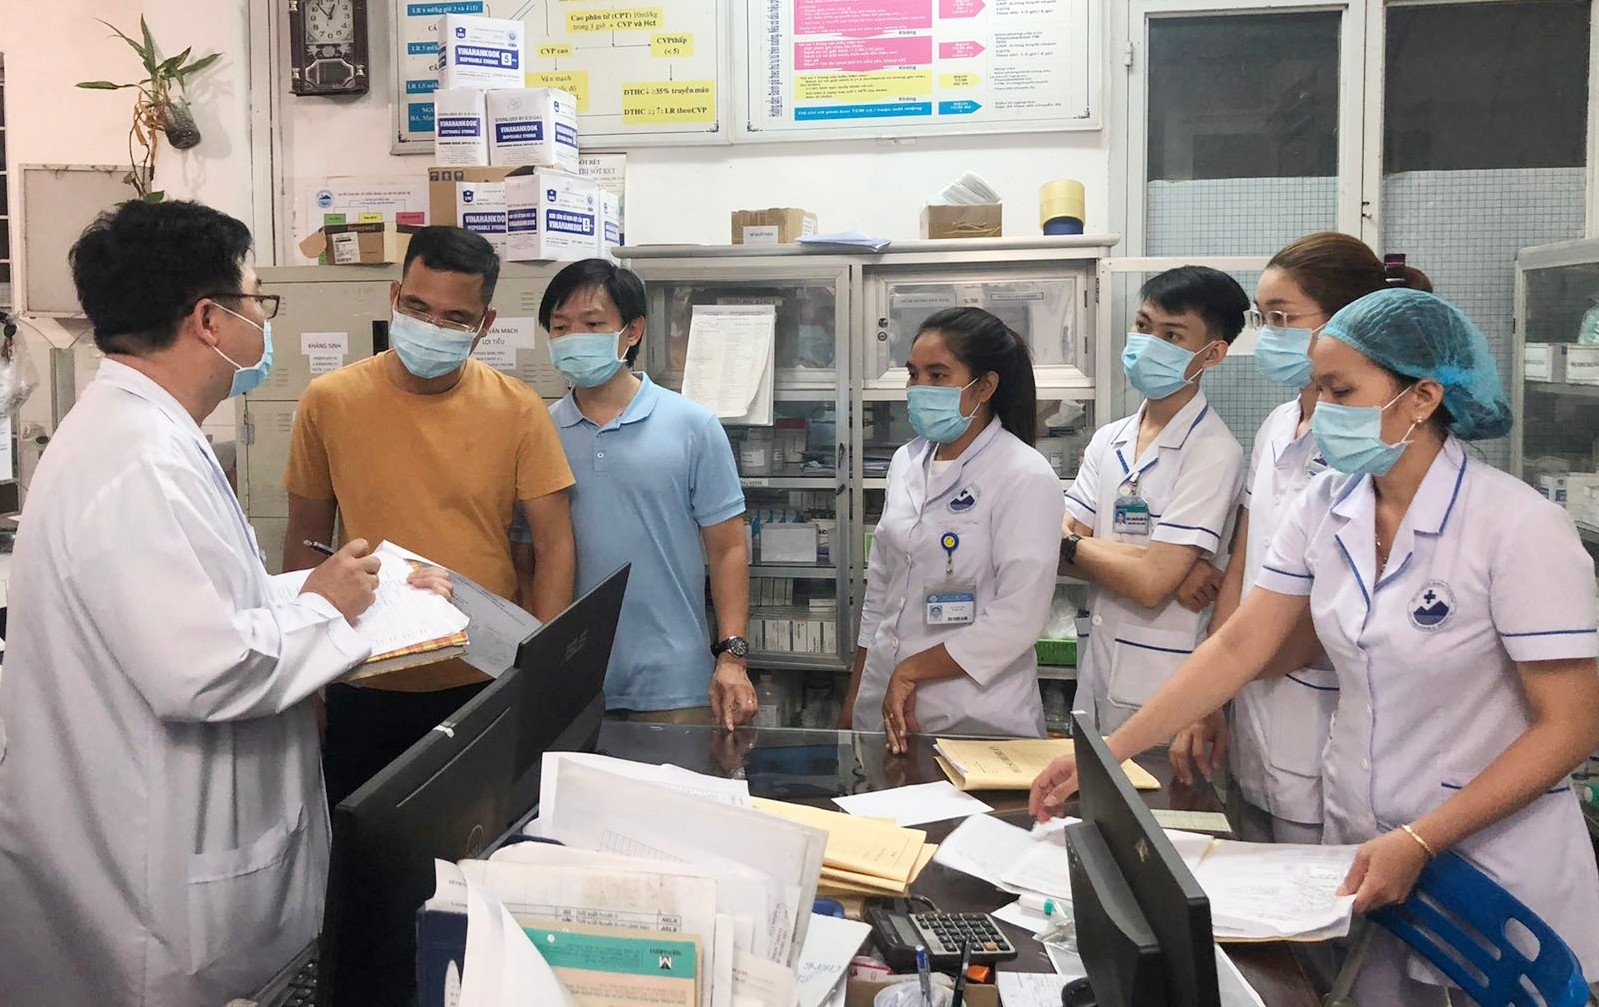 Bác sĩ Bệnh viện Chợ Rẫy lên đường đến hỗ trợ Tây Ninh phòng chống dịch bệnh Covid-19 trong đêm - Ảnh 1.